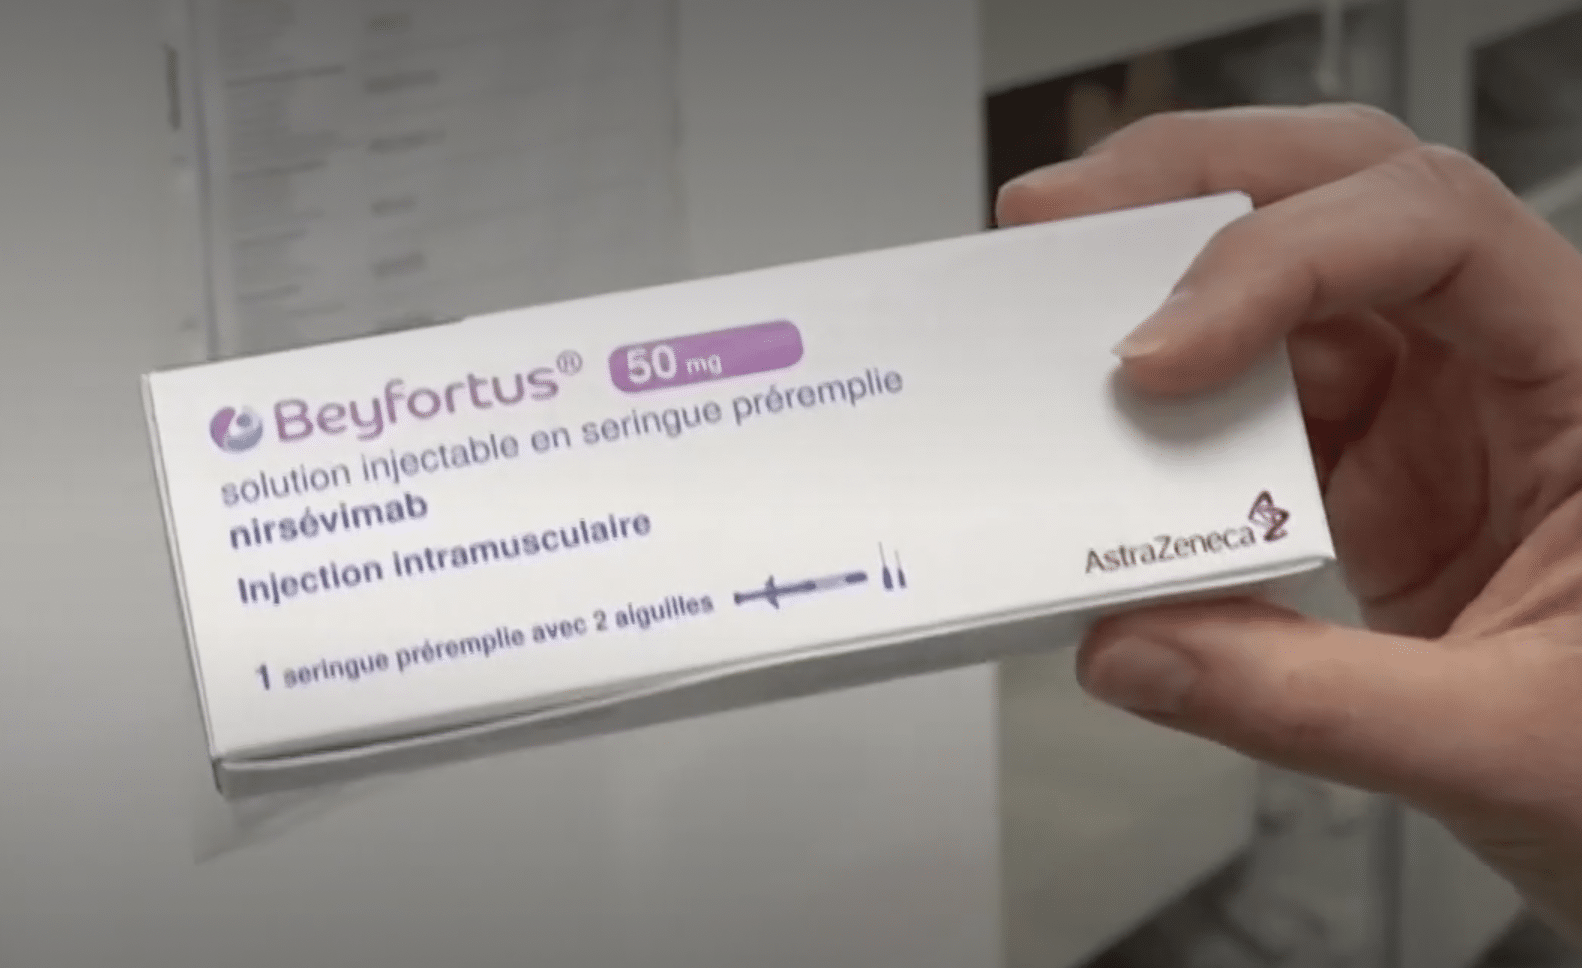 Beyfortus 50 mg : les commandes ne seront pas délivrées